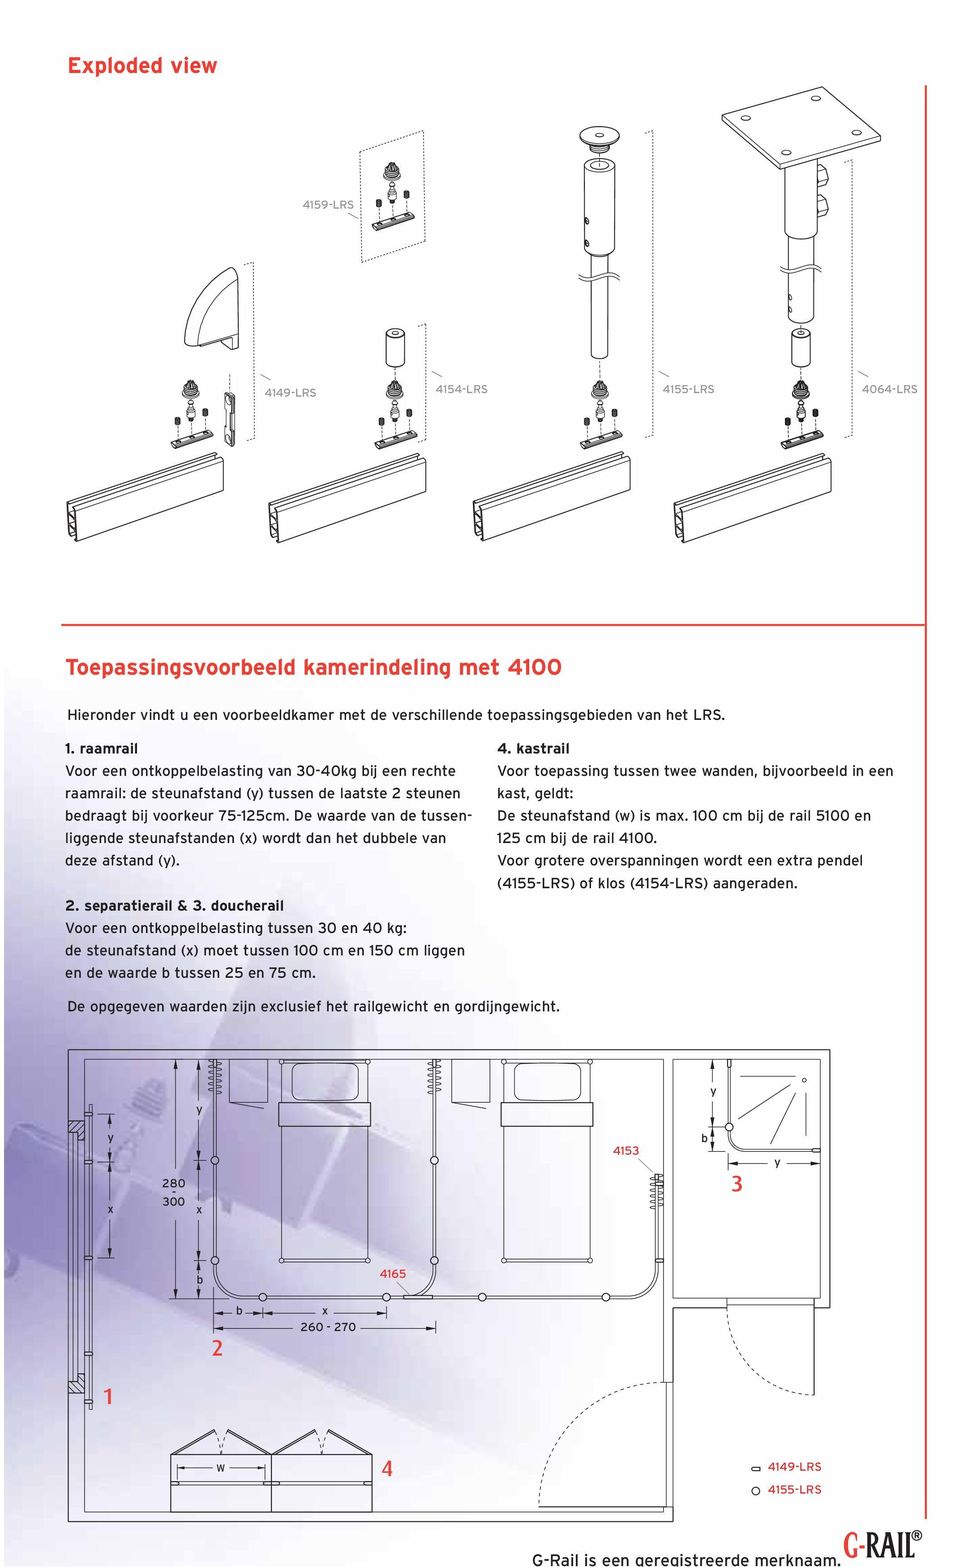 raamrail Voor een ontkoppelbelasting van 30-40kg bij een rechte raamrail: de steunafstand () tussen de laatste 2 steunen bedraagt bij voorkeur 75-125cm.